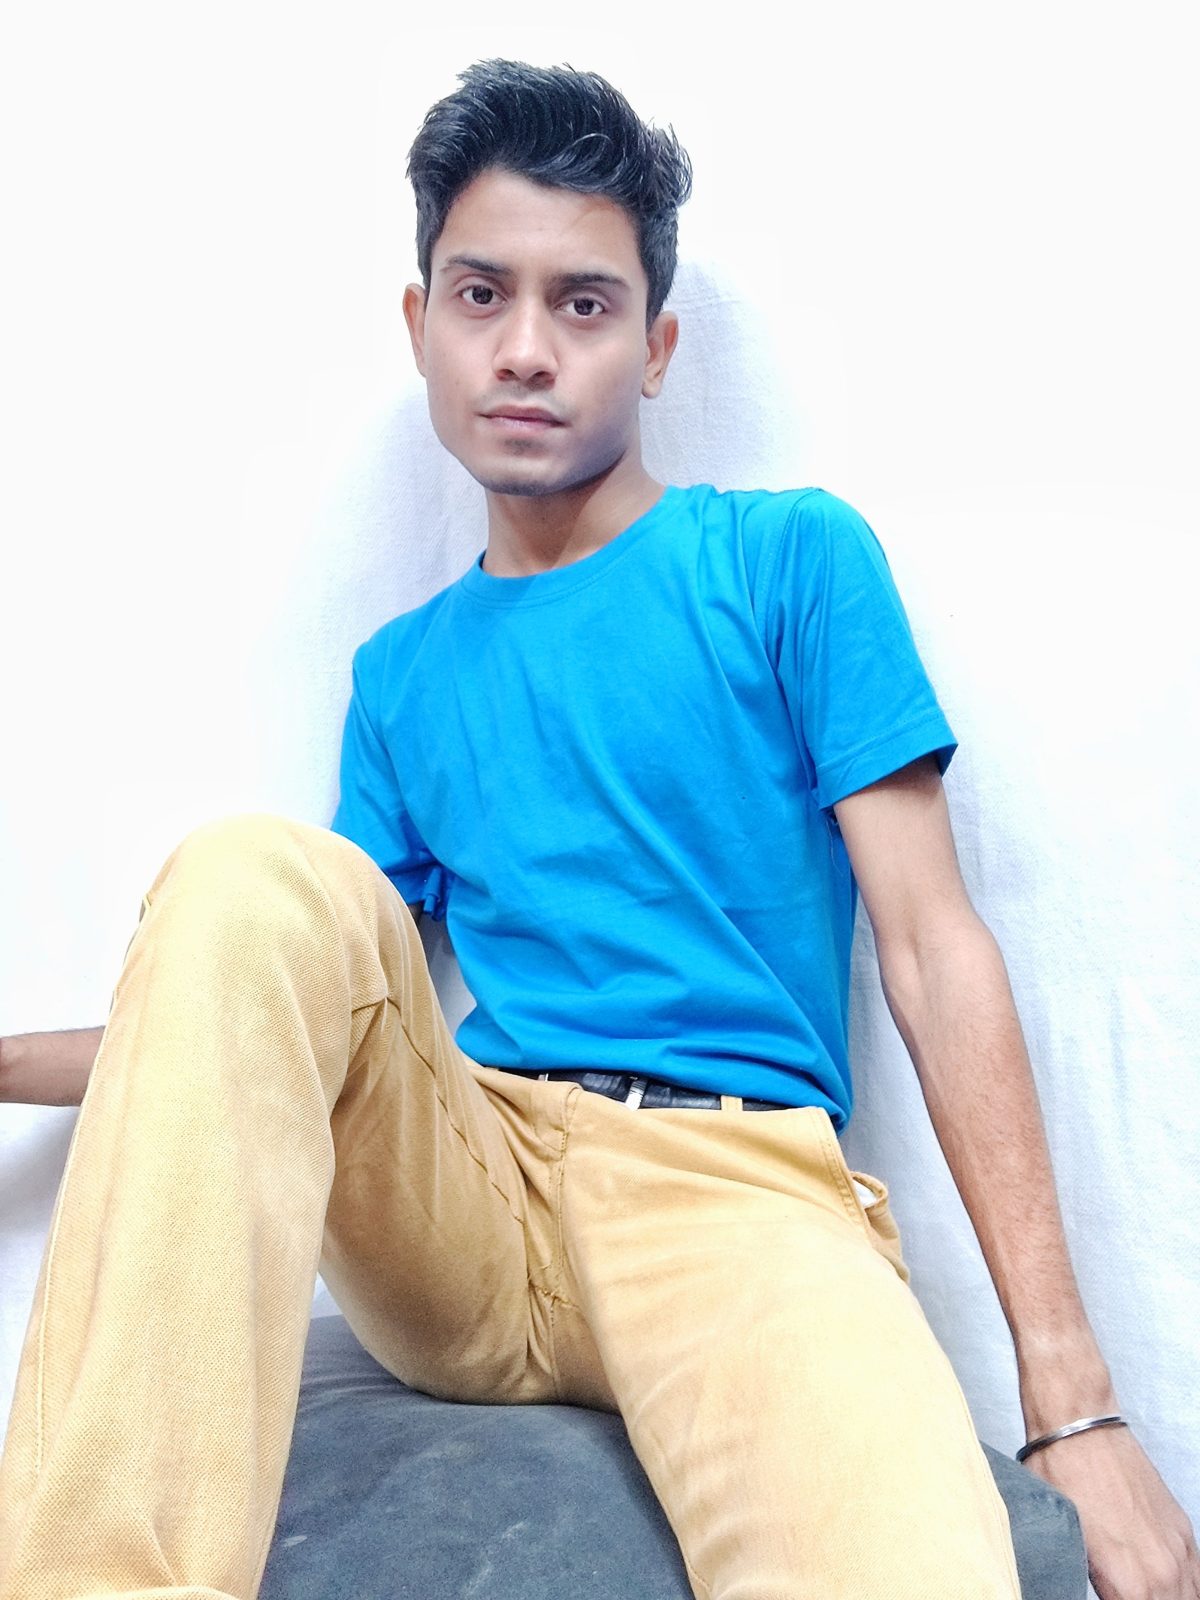 Turquoise blue round neck tshirt sitting image